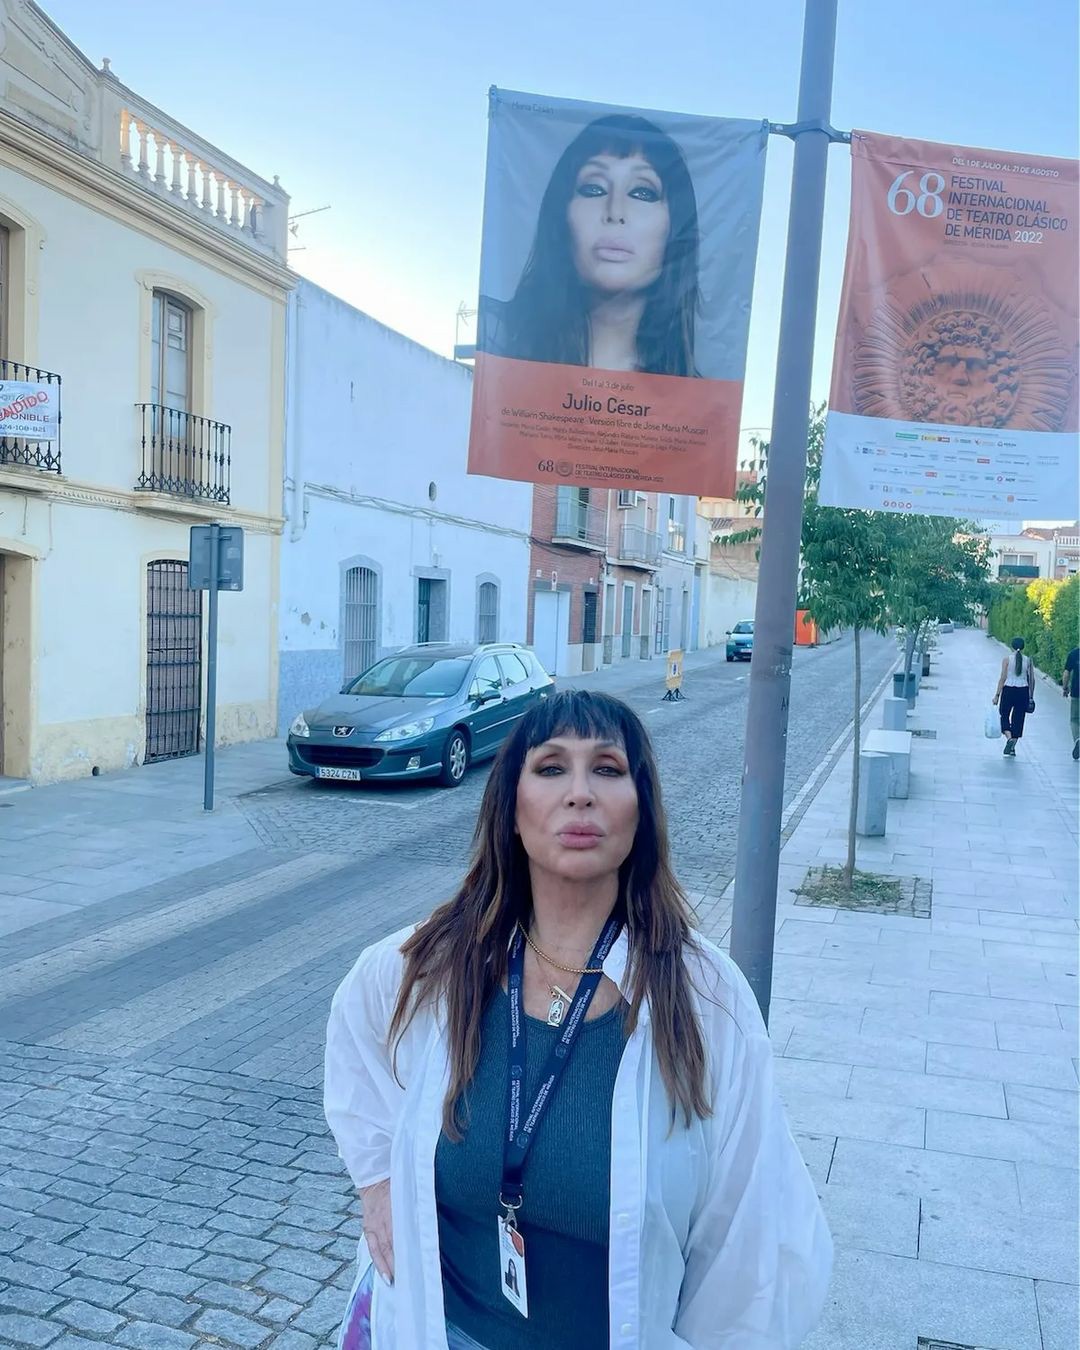 Moria posa en España con un cartel de promoción de la obra Julio César 